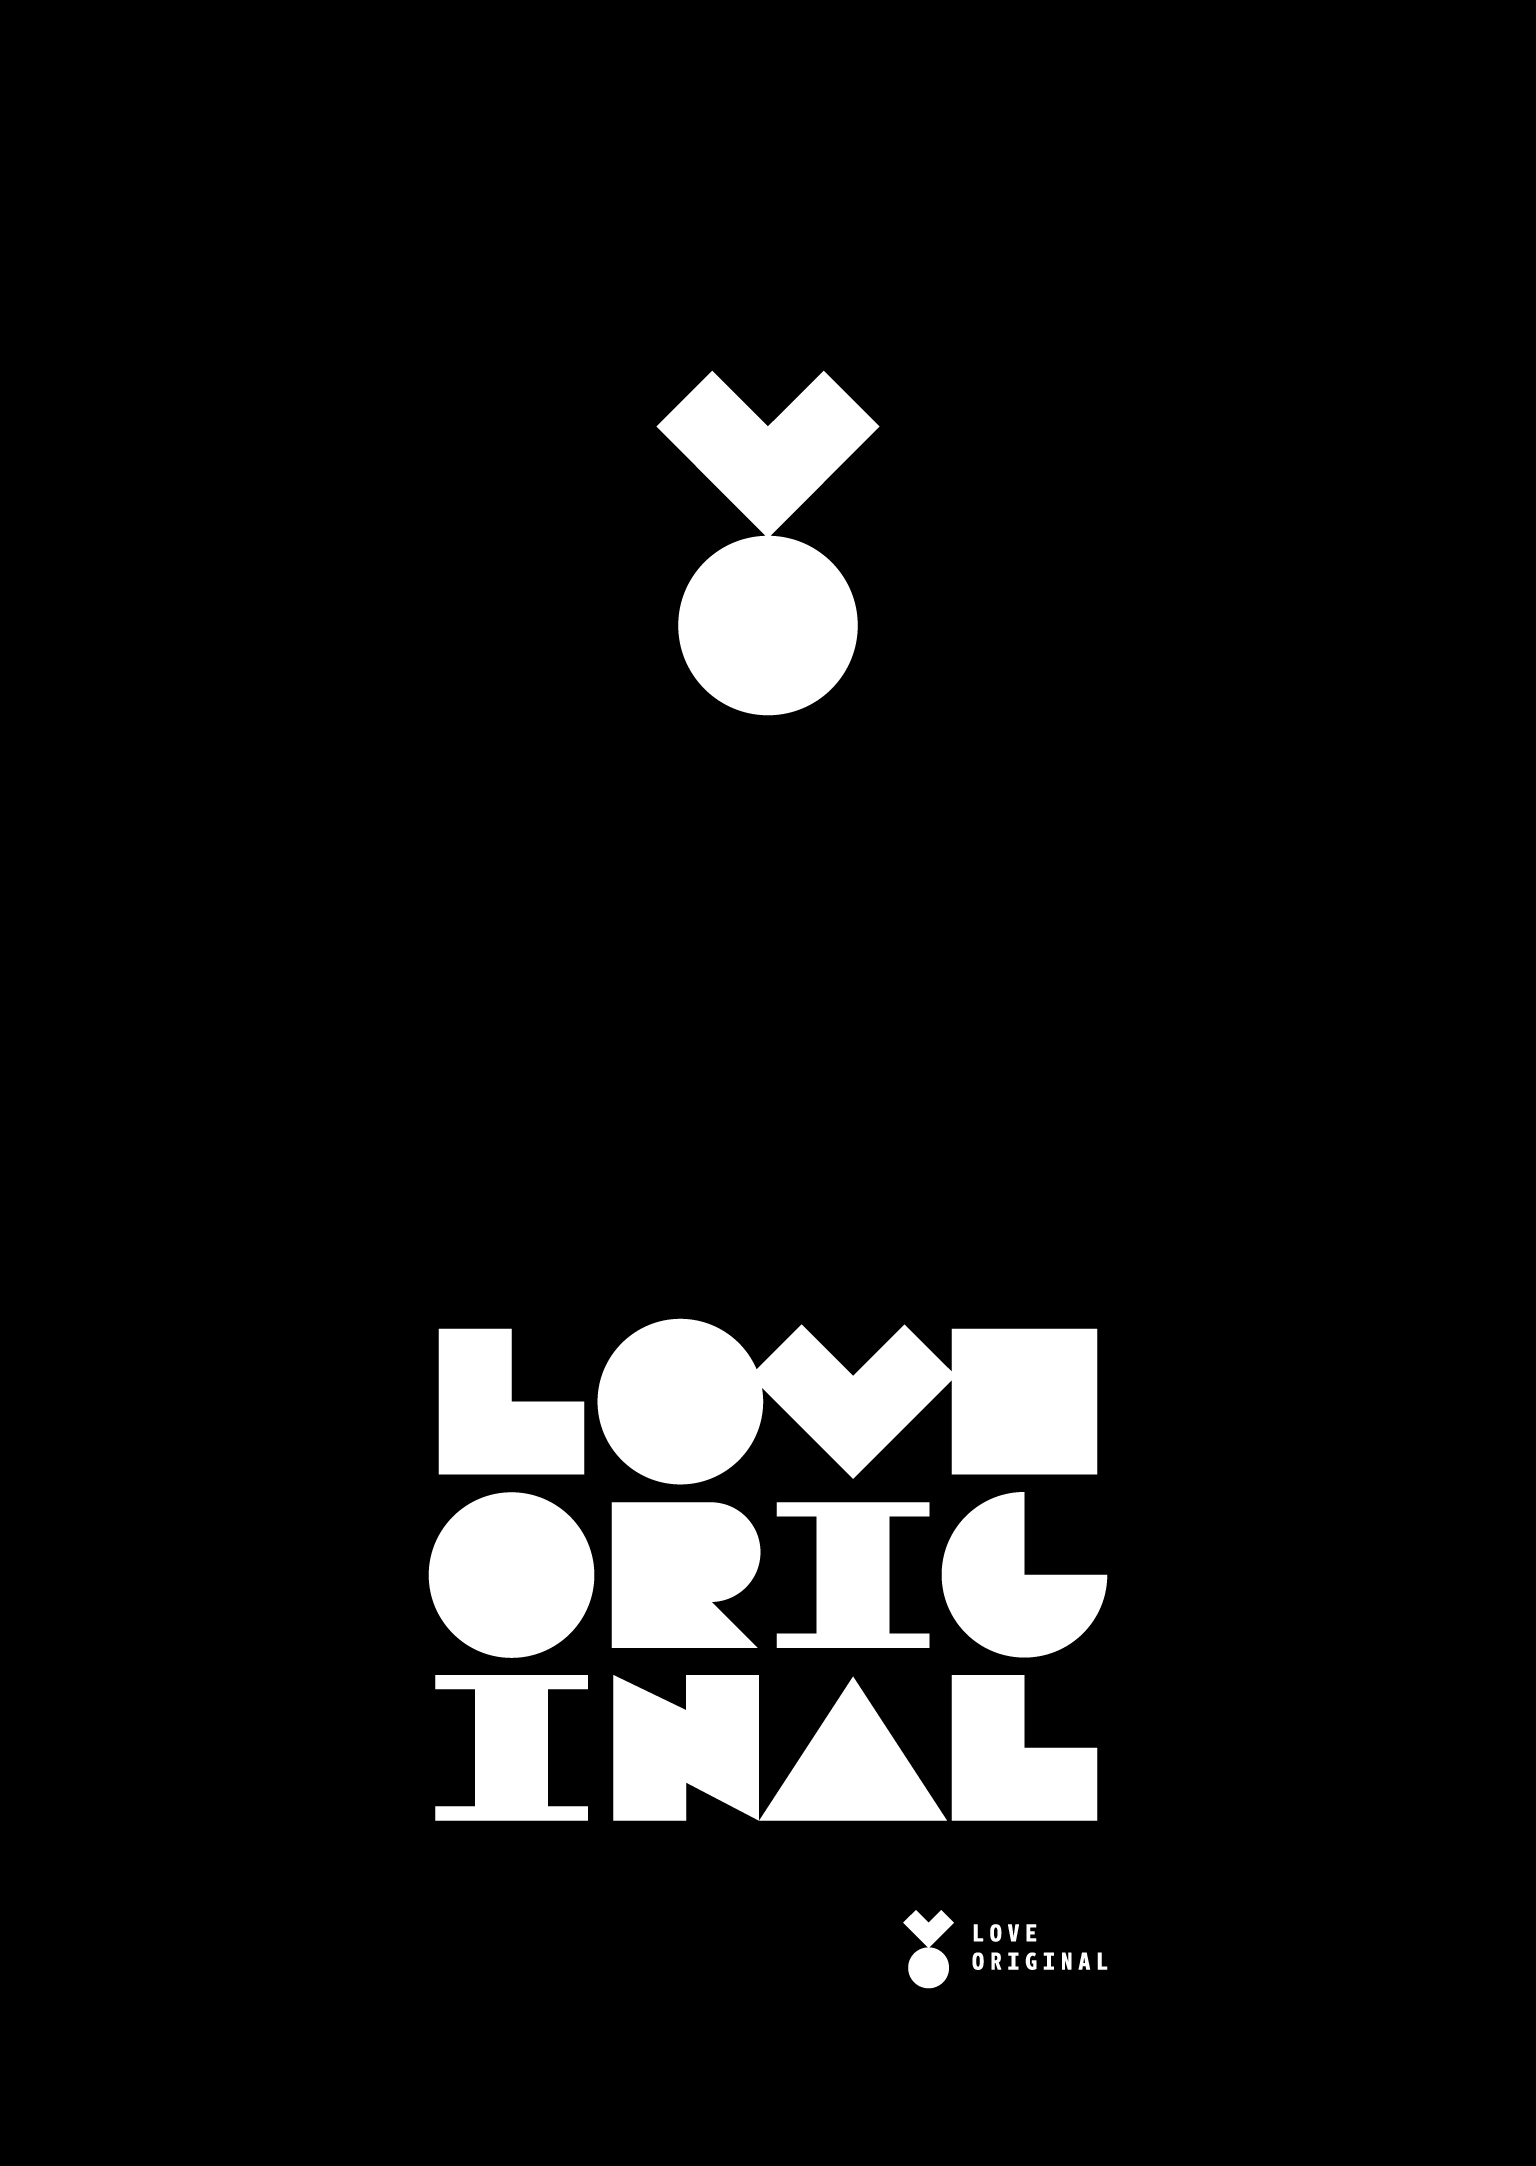 Love Original identity by Wojciech Janicki - Creative Work